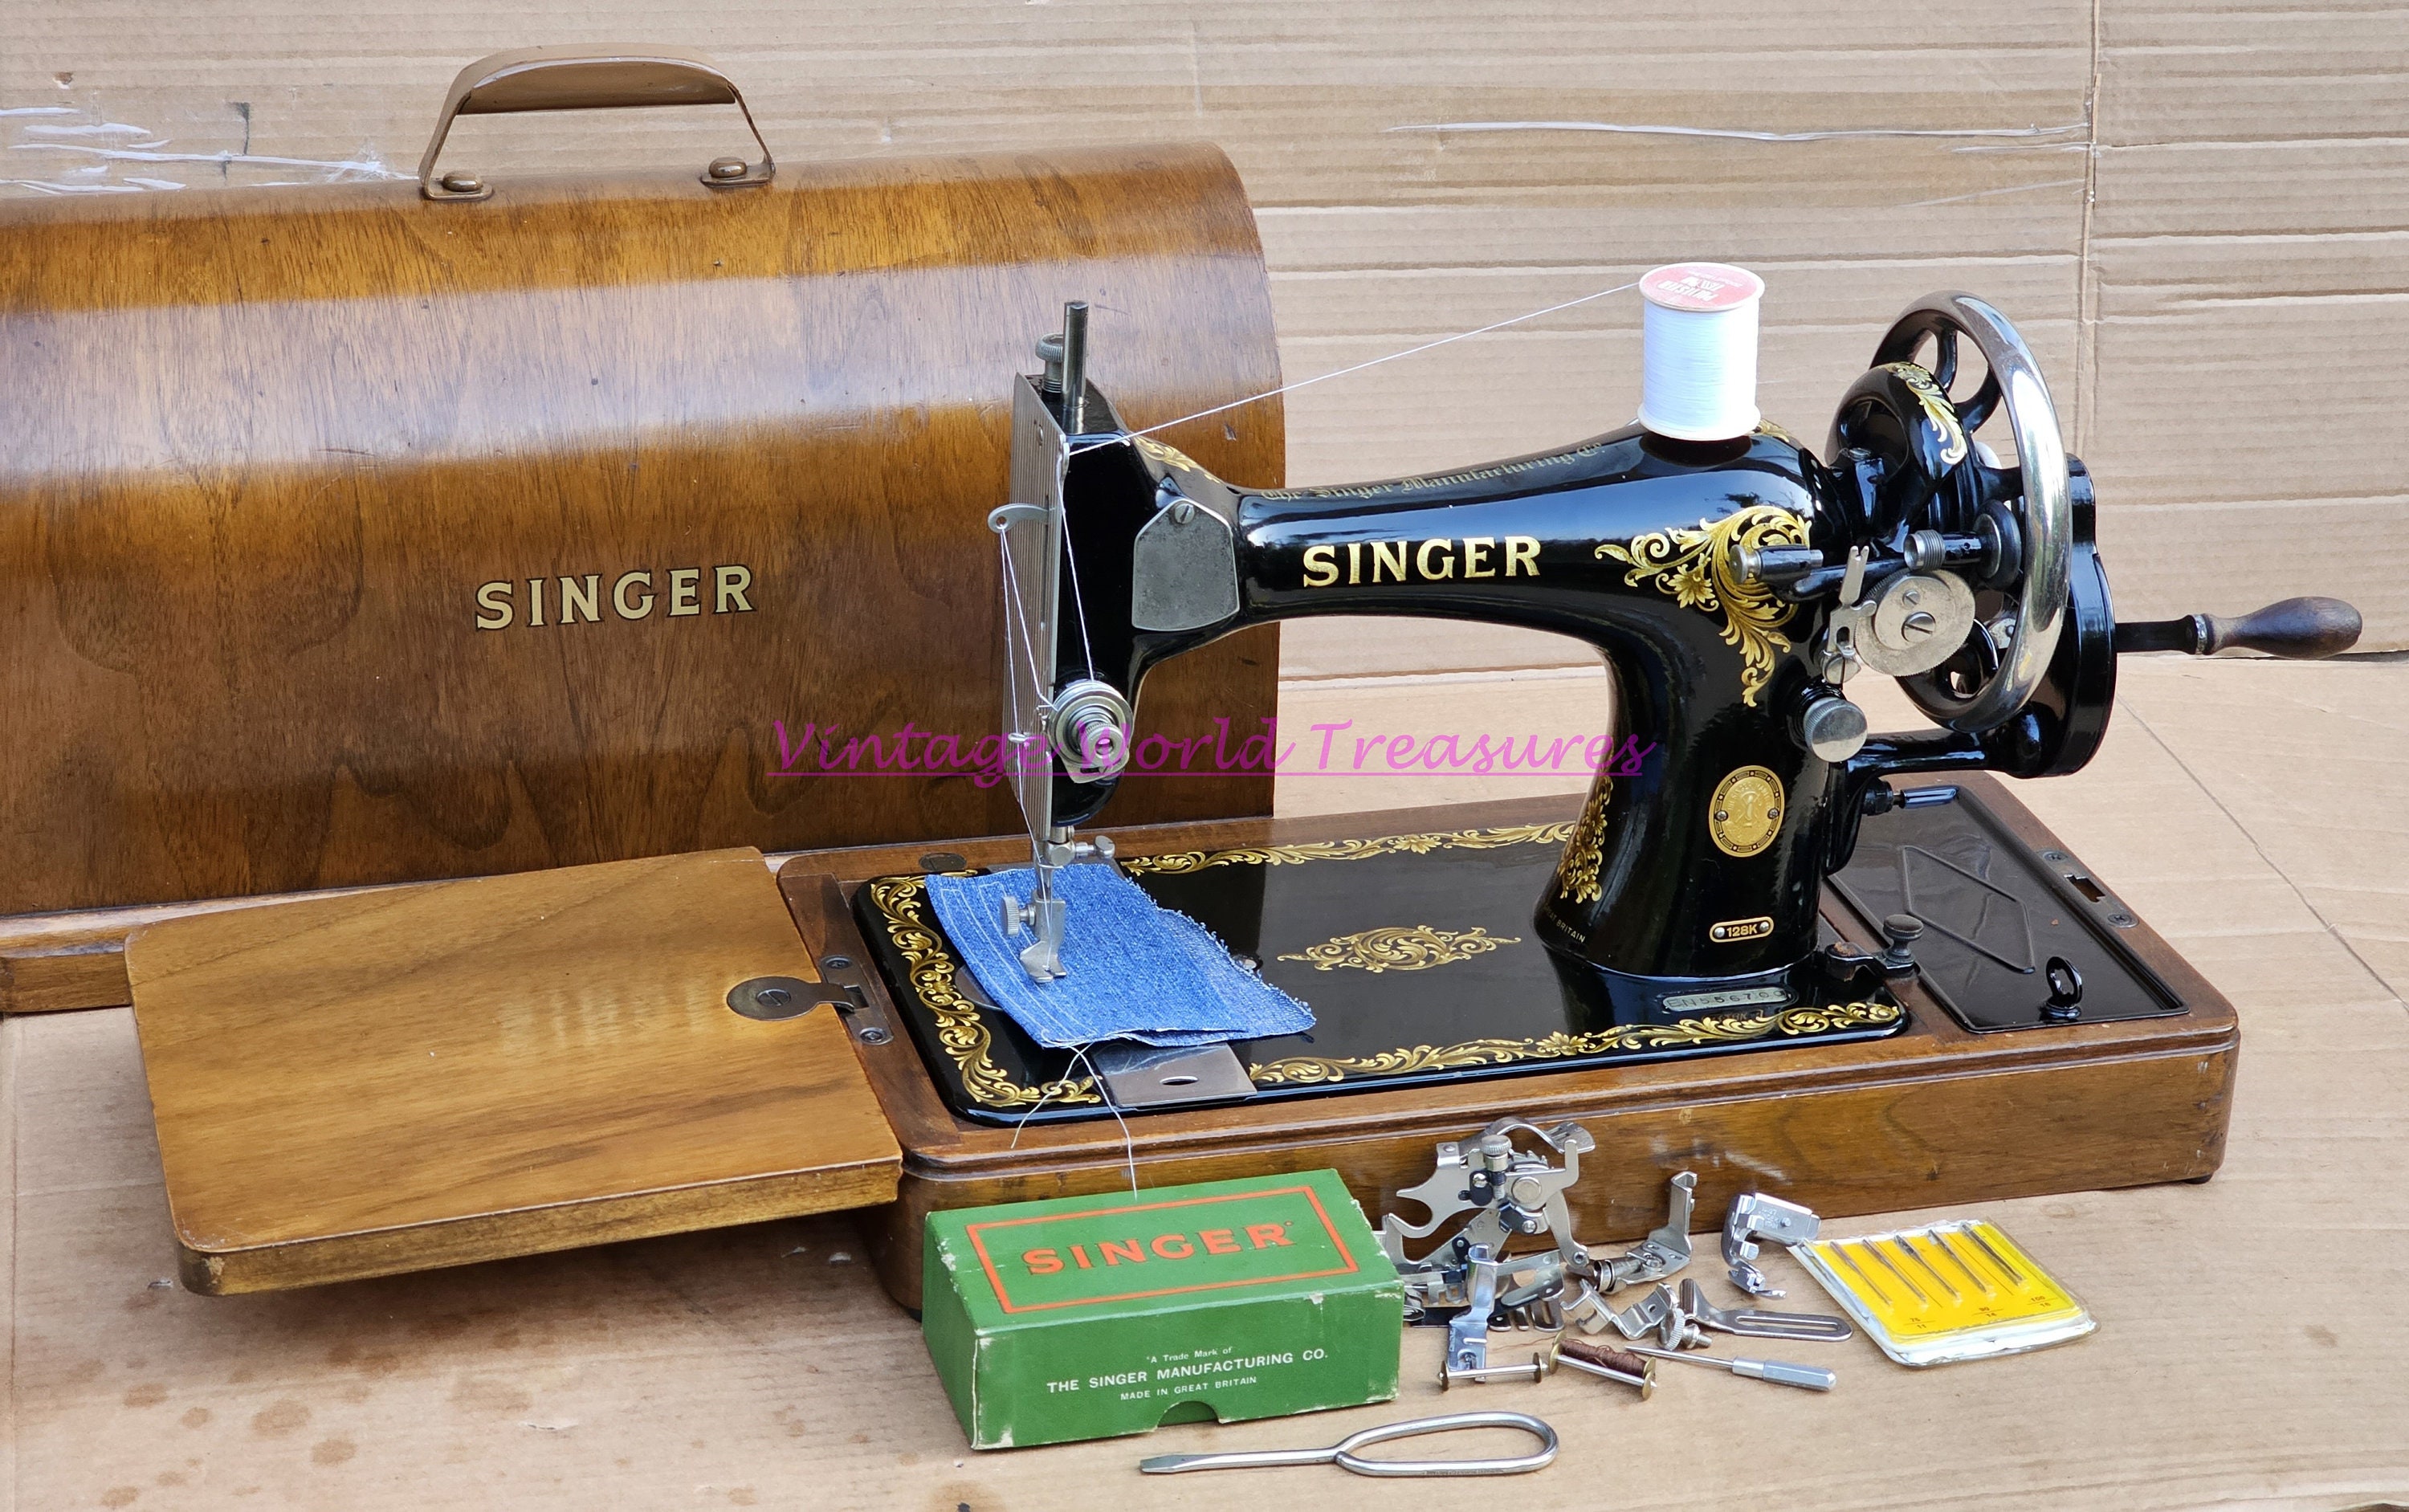 lata de aceite singer para máquinas de coser (v - Compra venta en